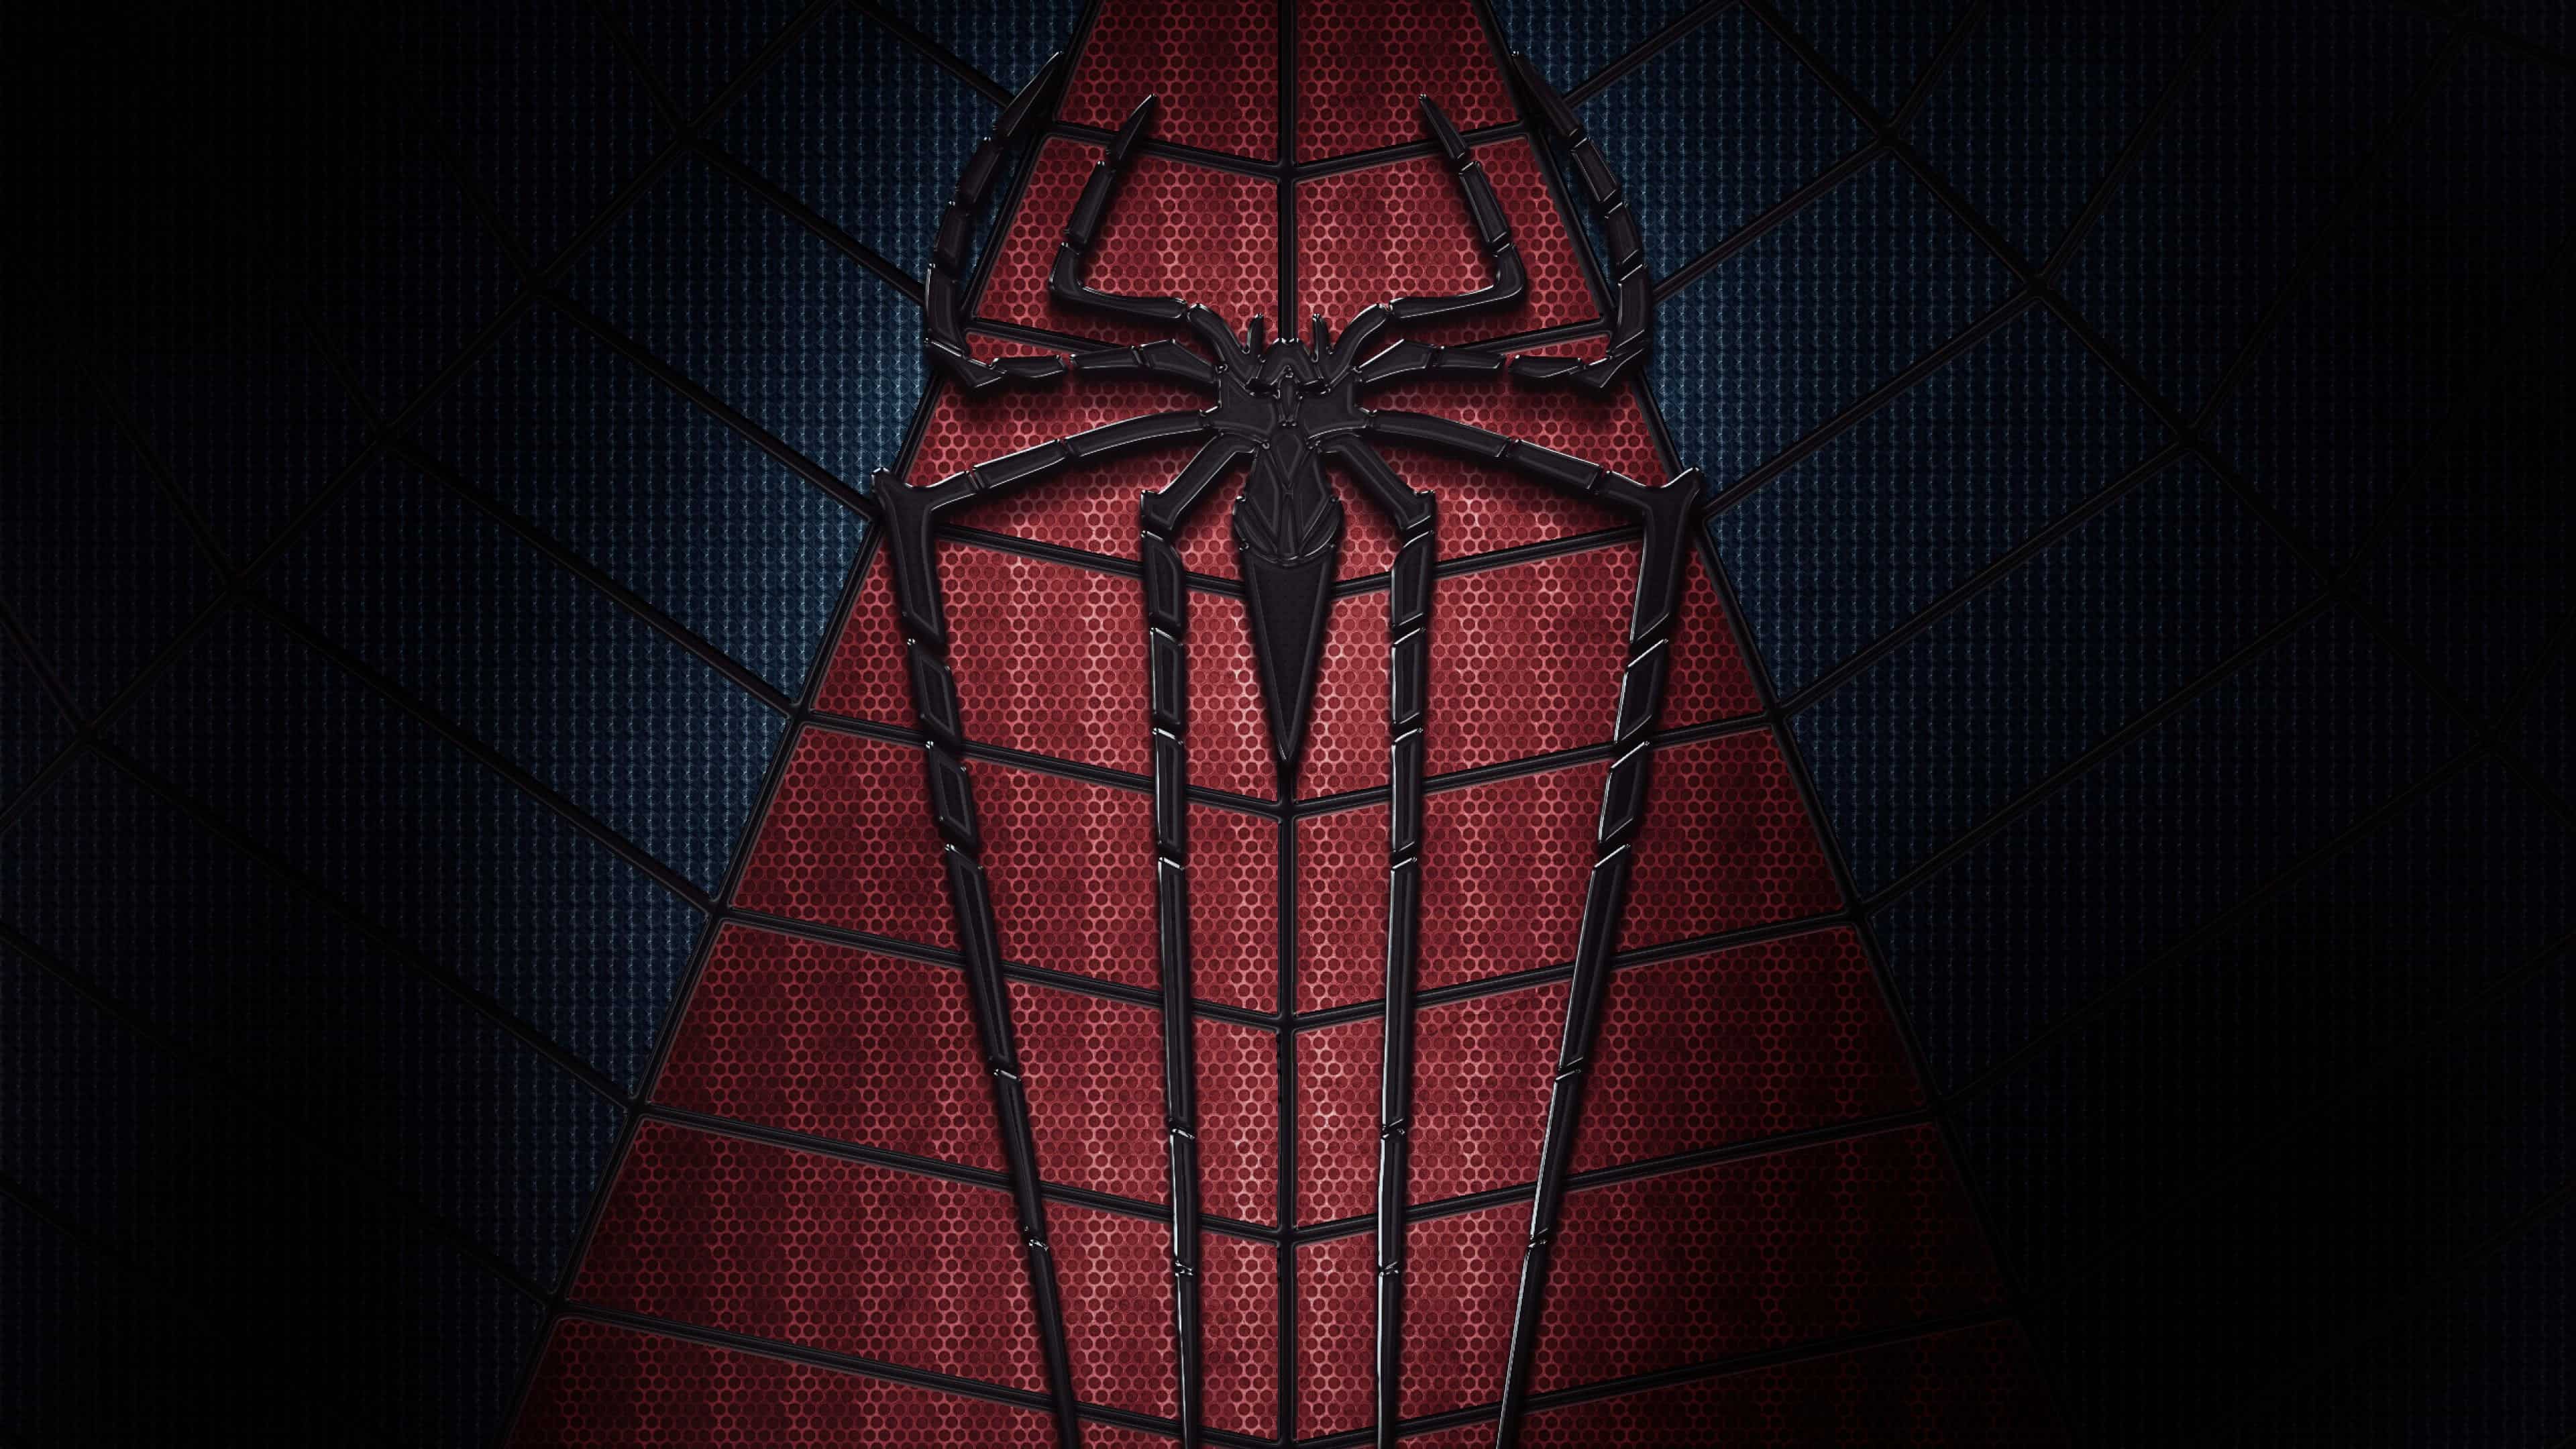 Black and Red SpiderMan Wallpapers  Top Những Hình Ảnh Đẹp